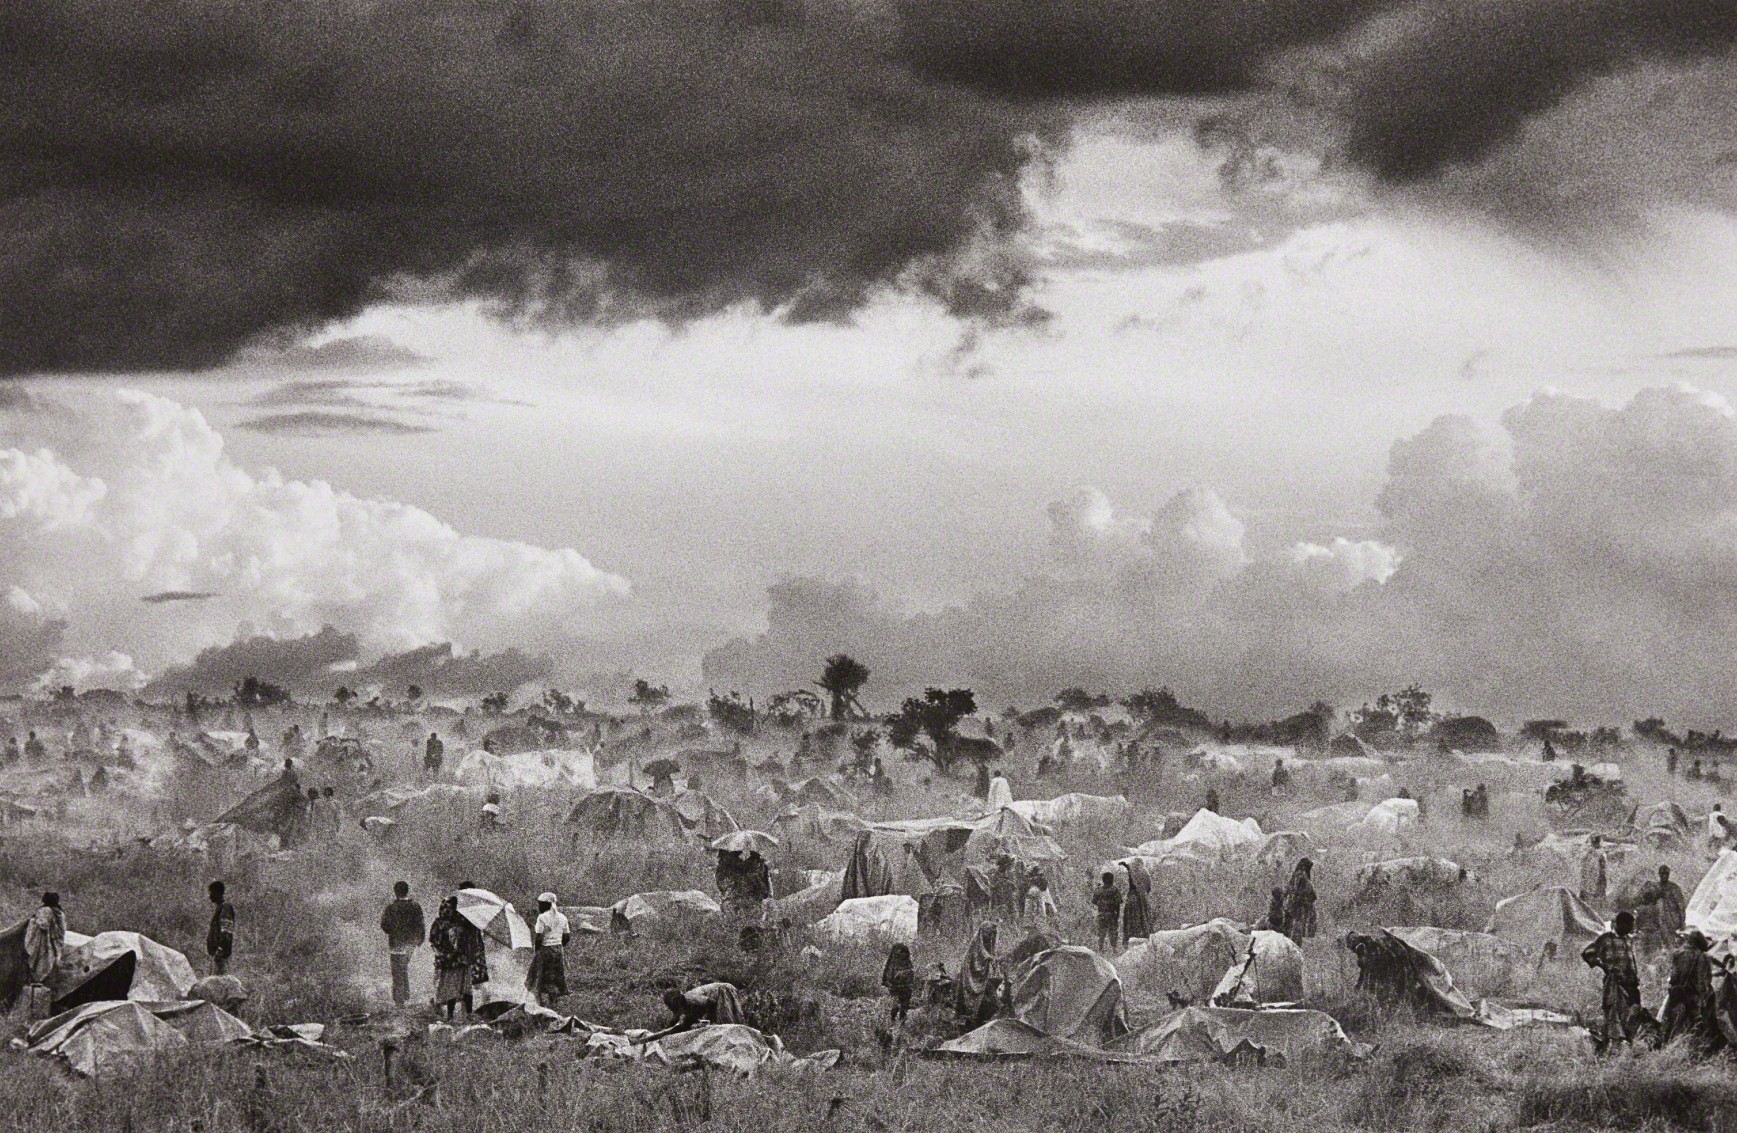 Первый день вселения лагеря Бенако для руандийских беженцев в Танзании, 1994. Автор Себастьян Сальгадо